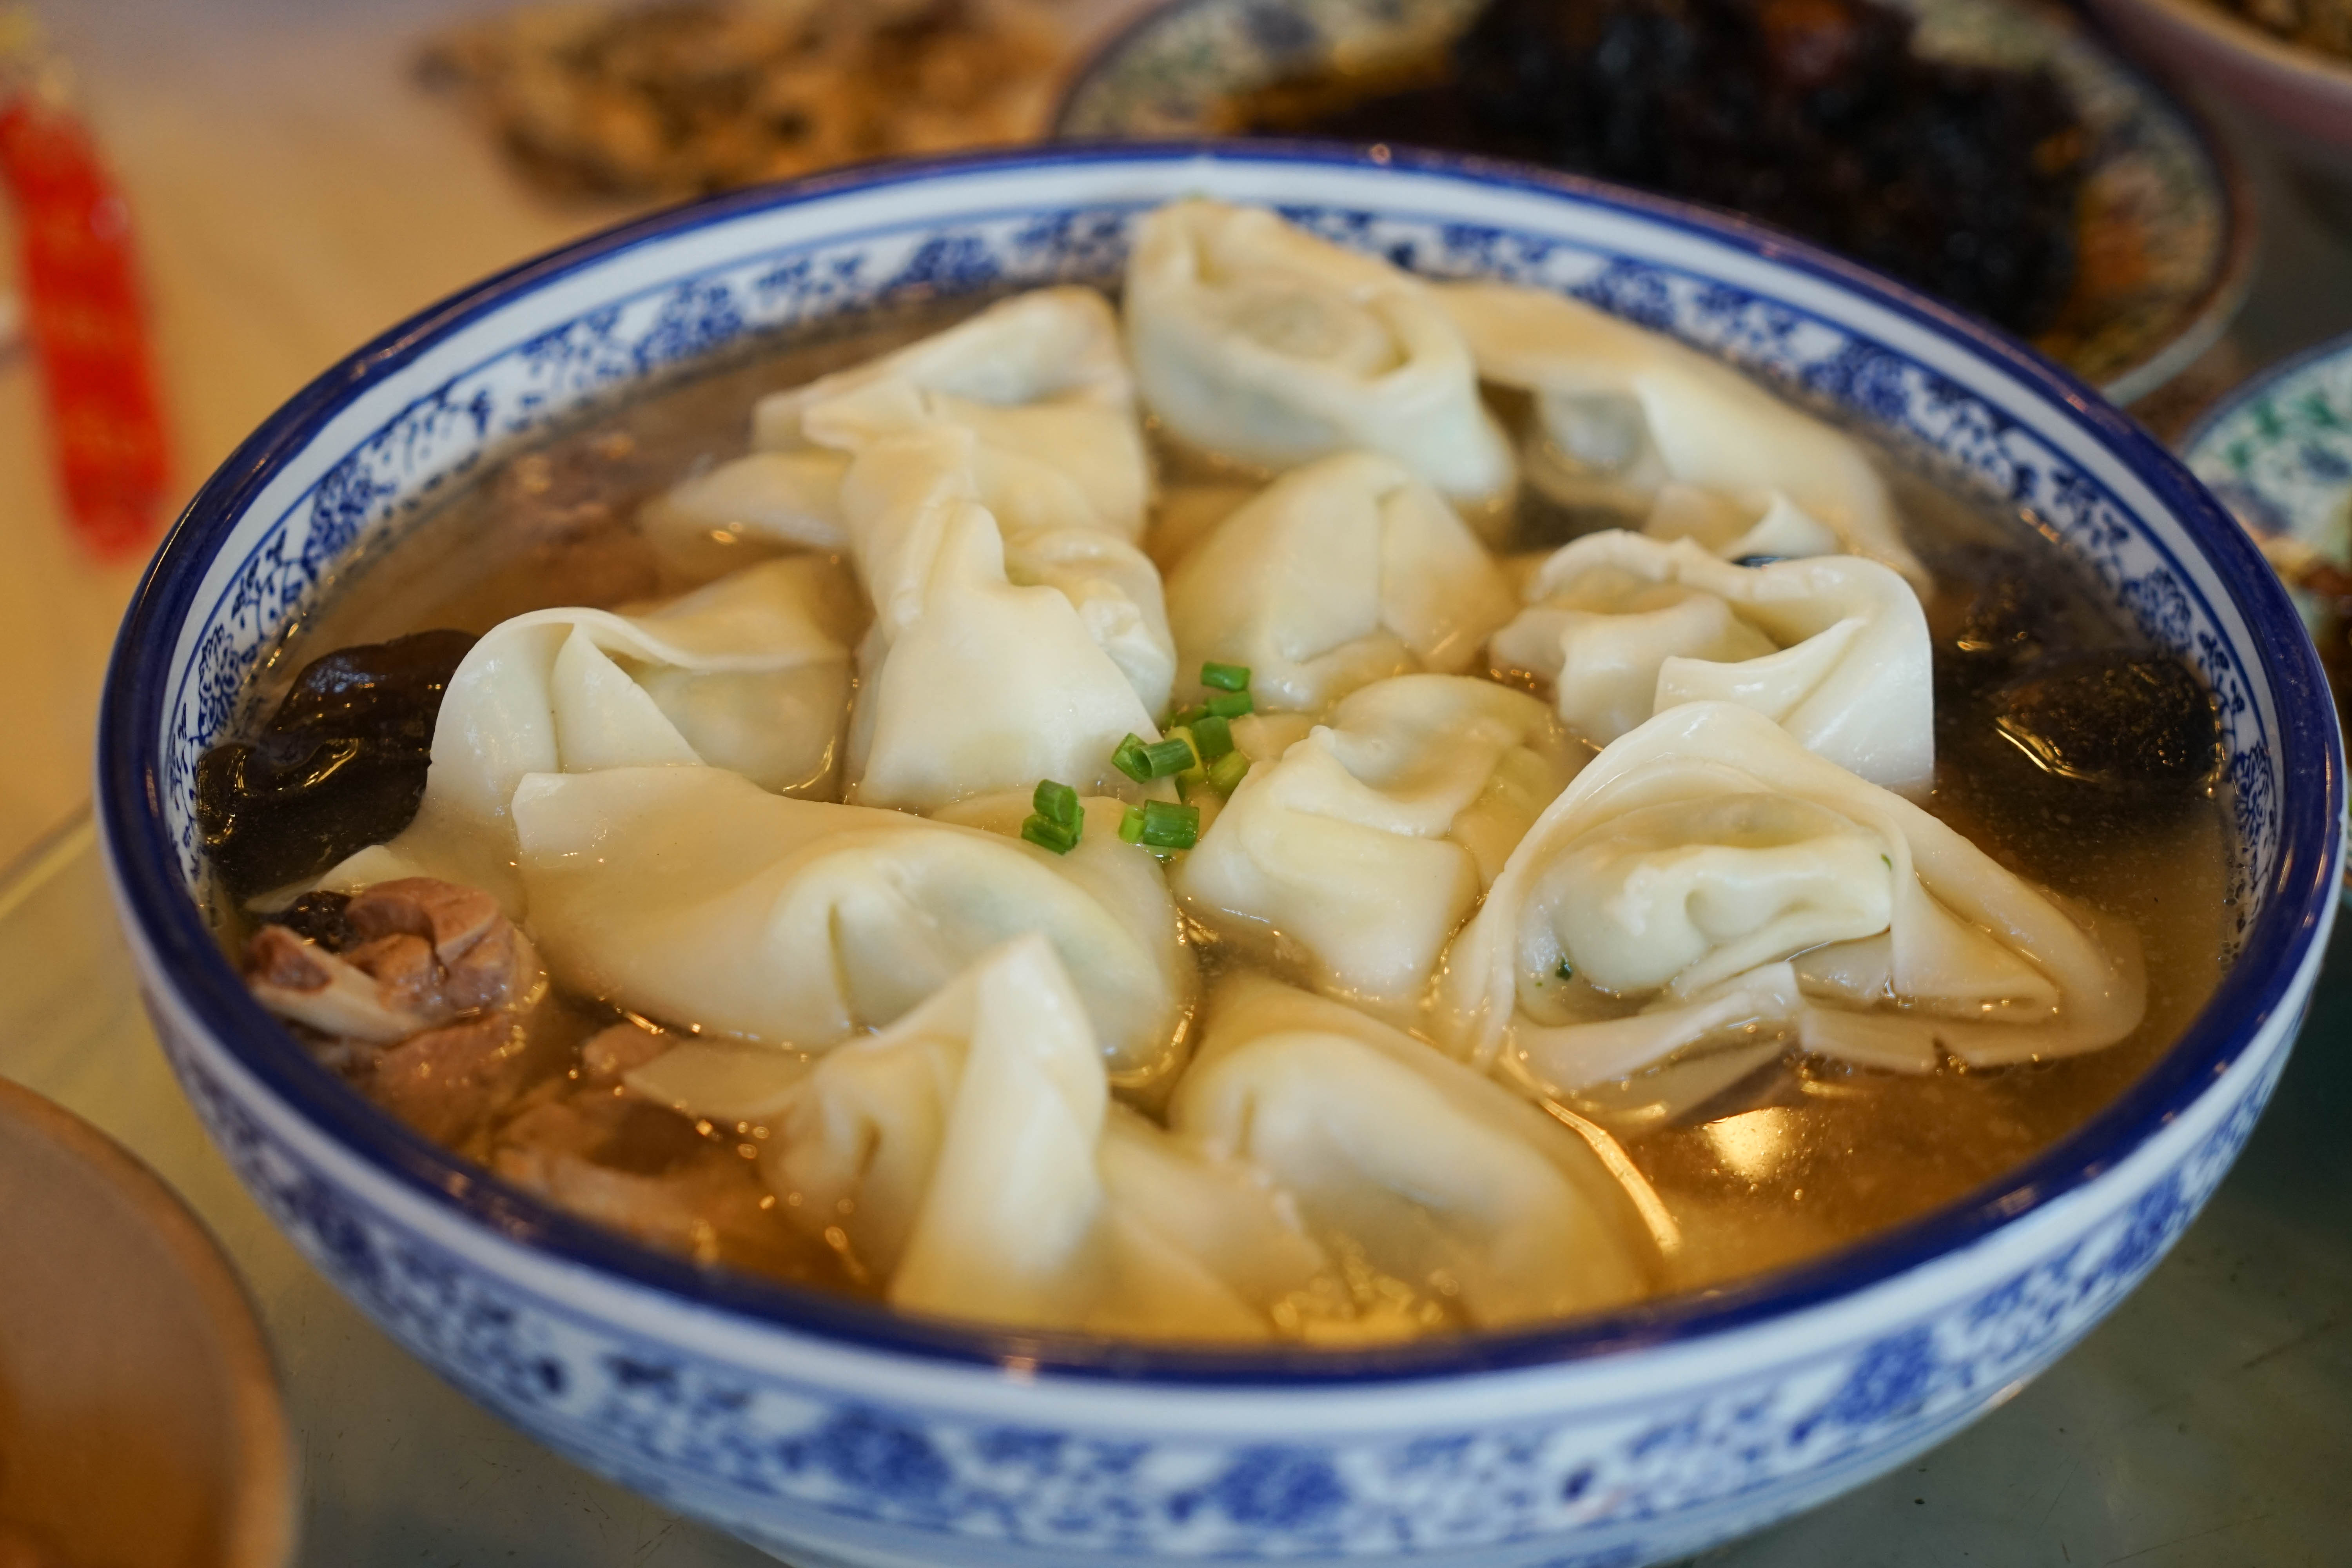 西塘,吃就成了必不可少的一个节目,从当地的特色菜到街边巷尾的小吃